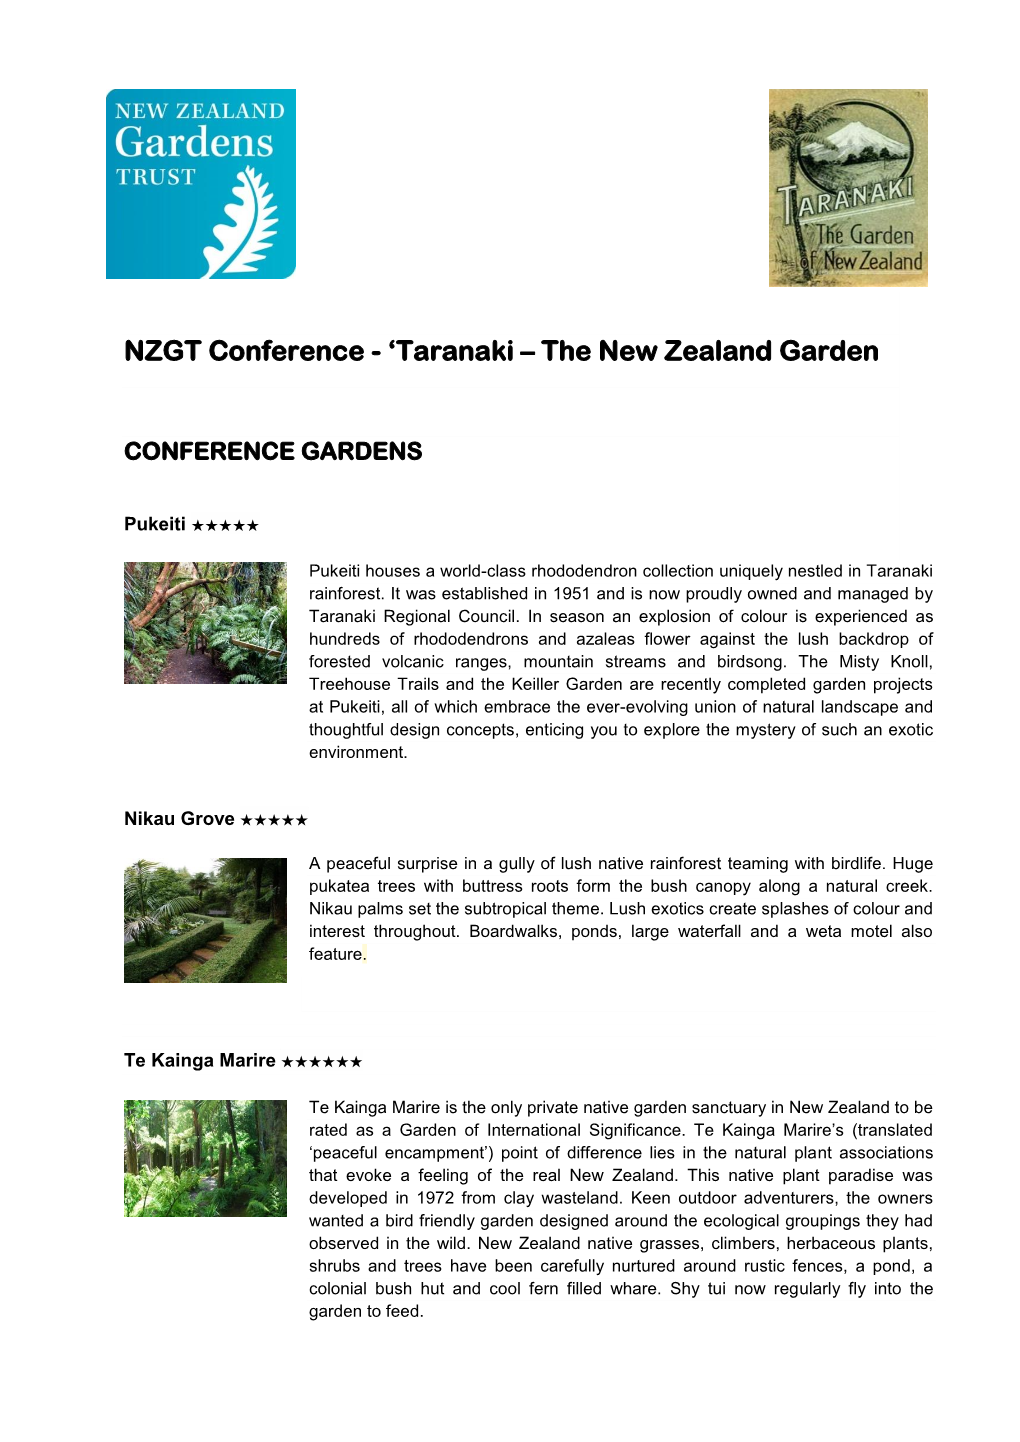 NZGT Conference - ‘Taranaki – the New Zealand Garden